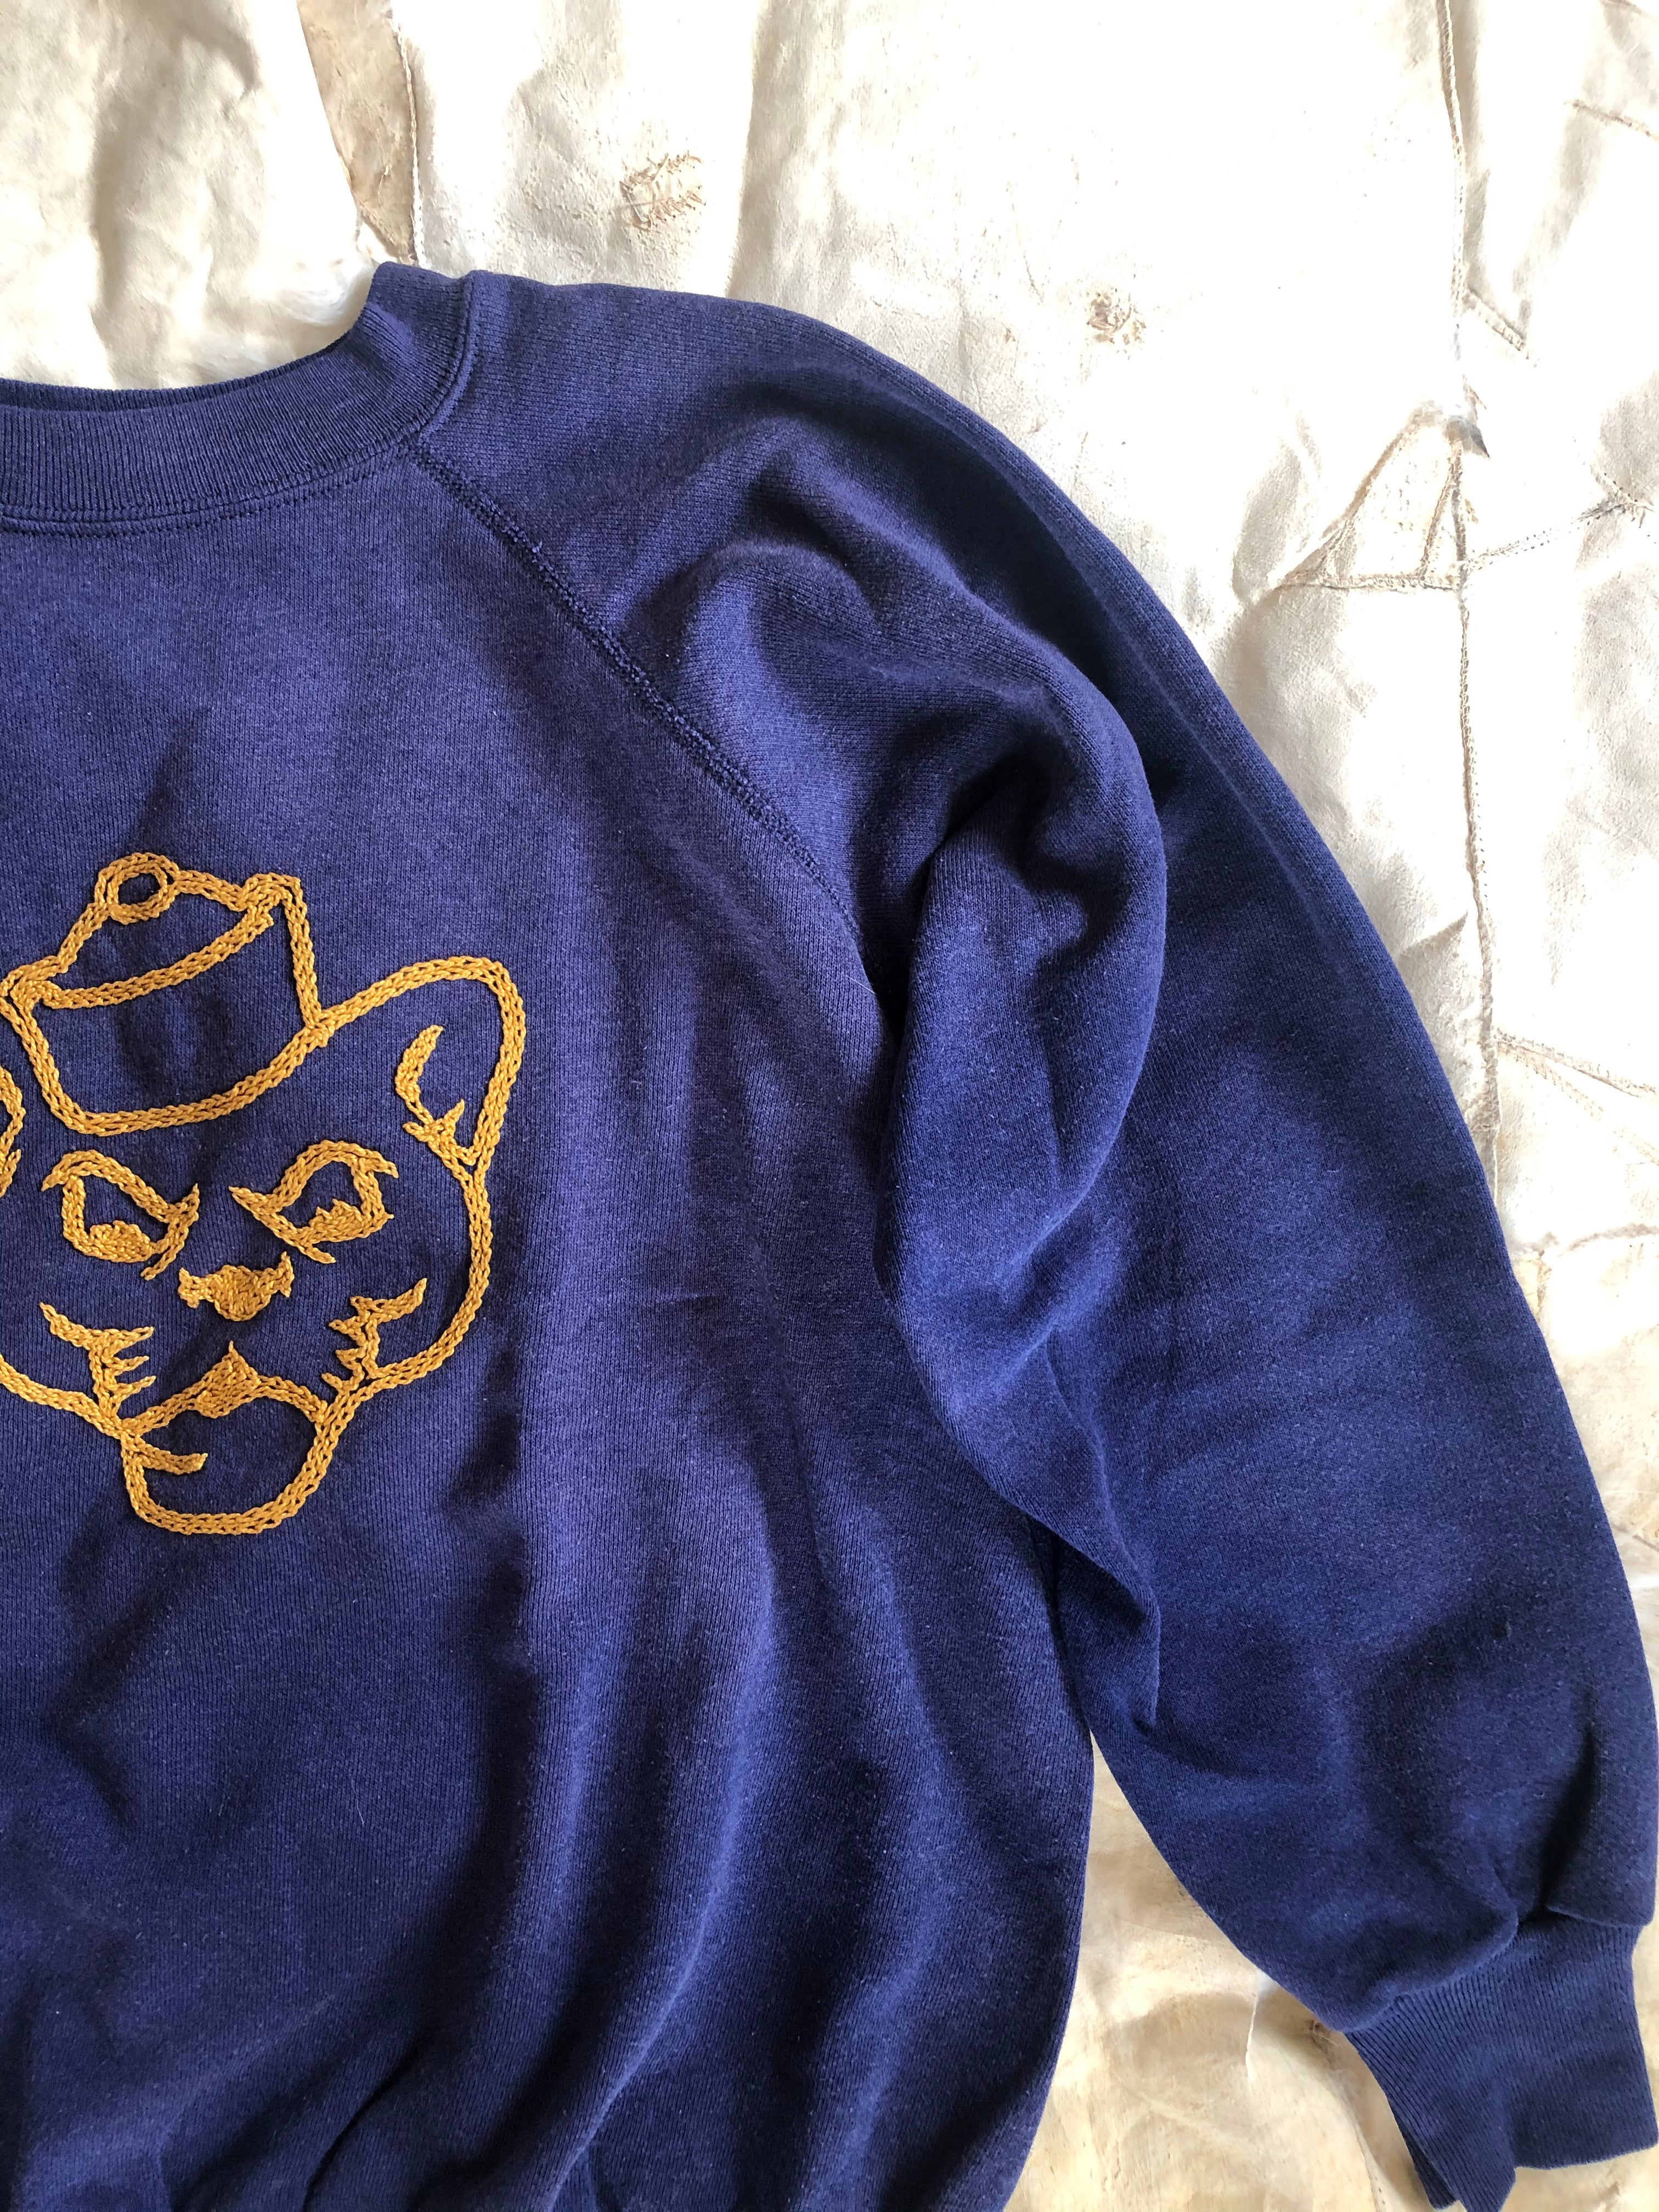 1970’s Chain Stitched Mascot Sweatshirt